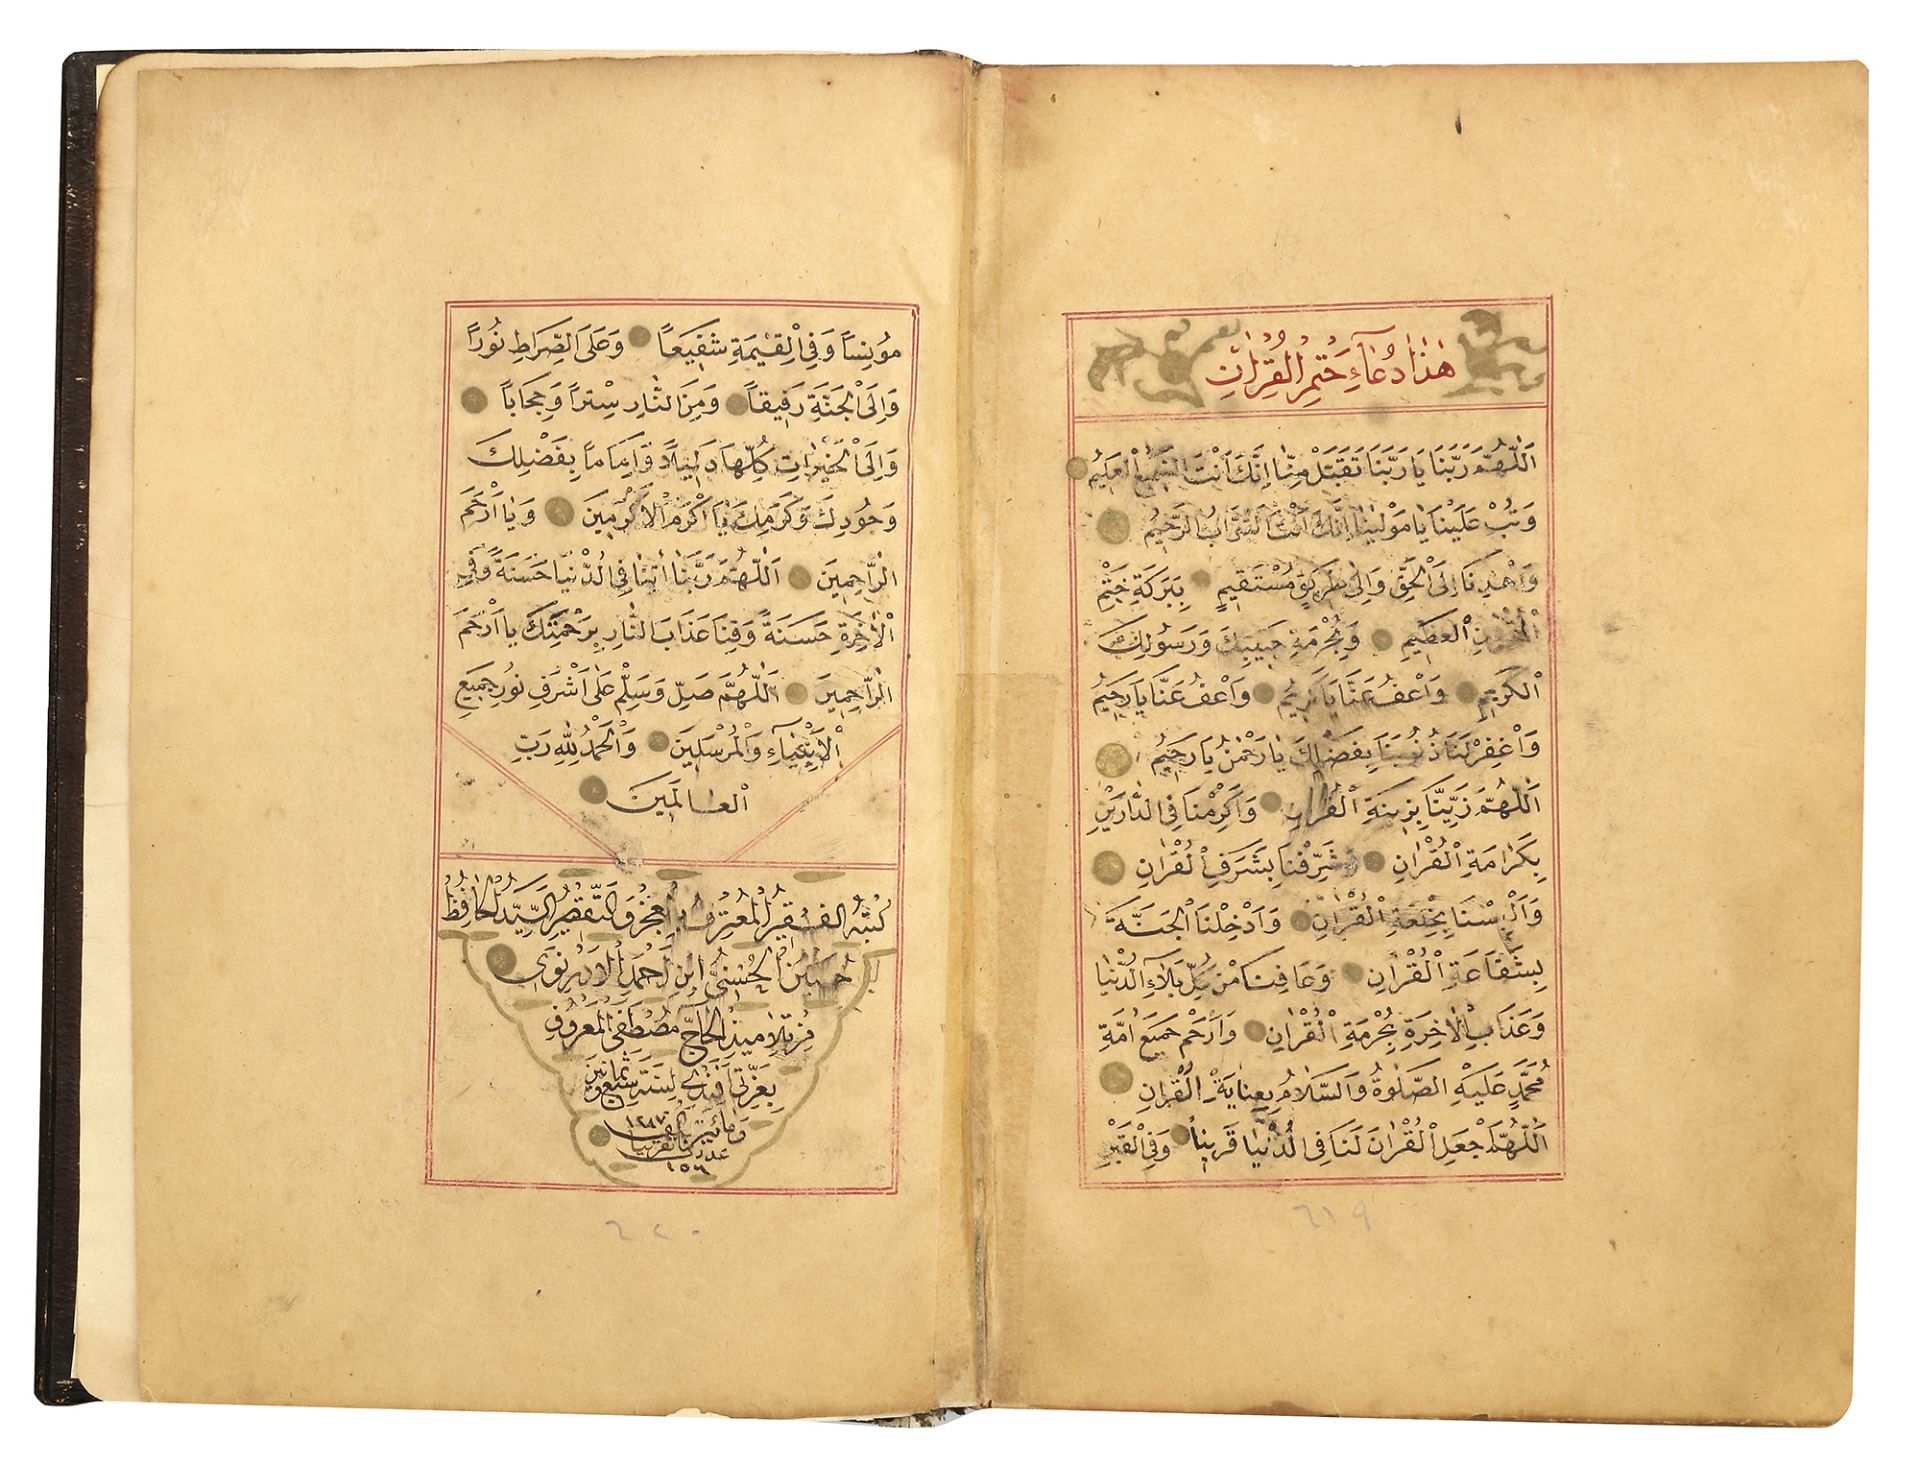 A FINE OTTOMAN QURAN, TURKEY, EDIRNE, WRITTEN BY HUSSEIN AL-HUSNA IBN AHMED AL-ADRUNI, DATED 1287 AH - Image 4 of 4